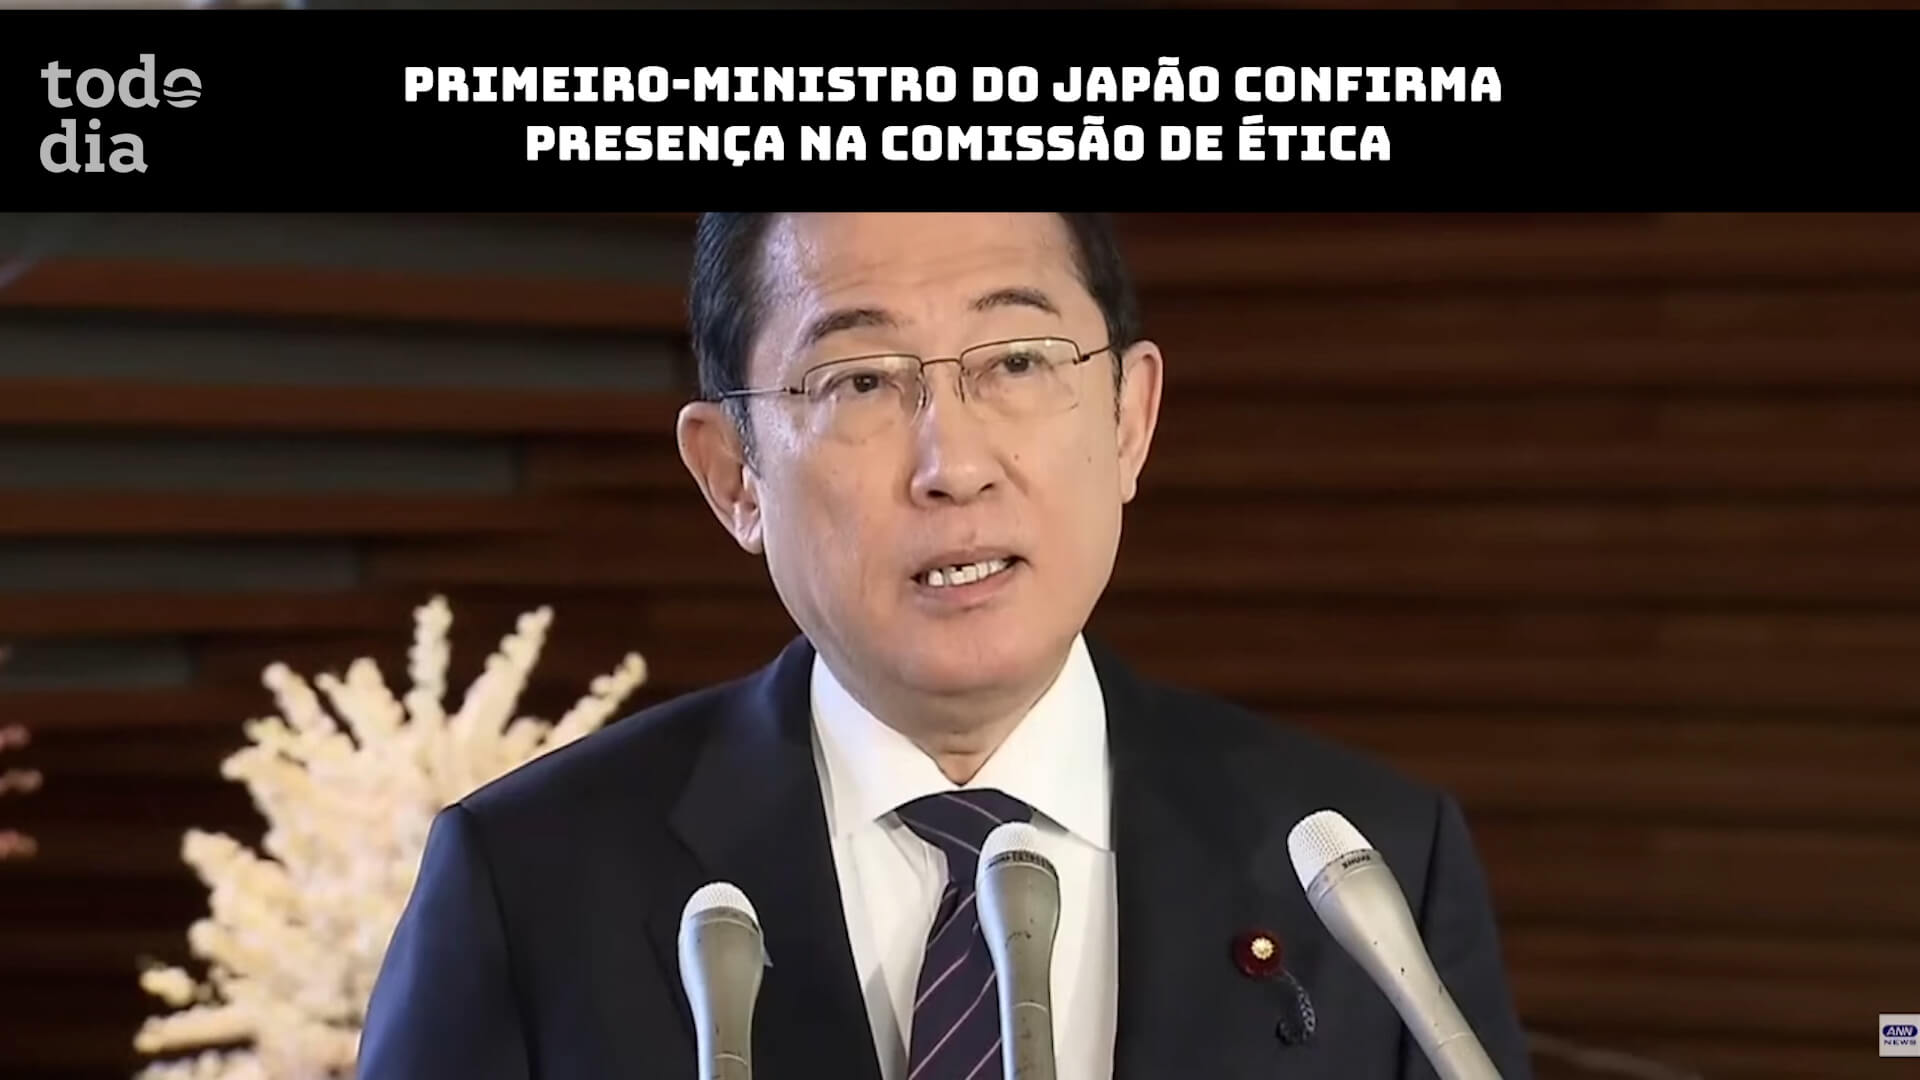 Primeiro-Ministro do Japão confirma presença na Comissão de Ética